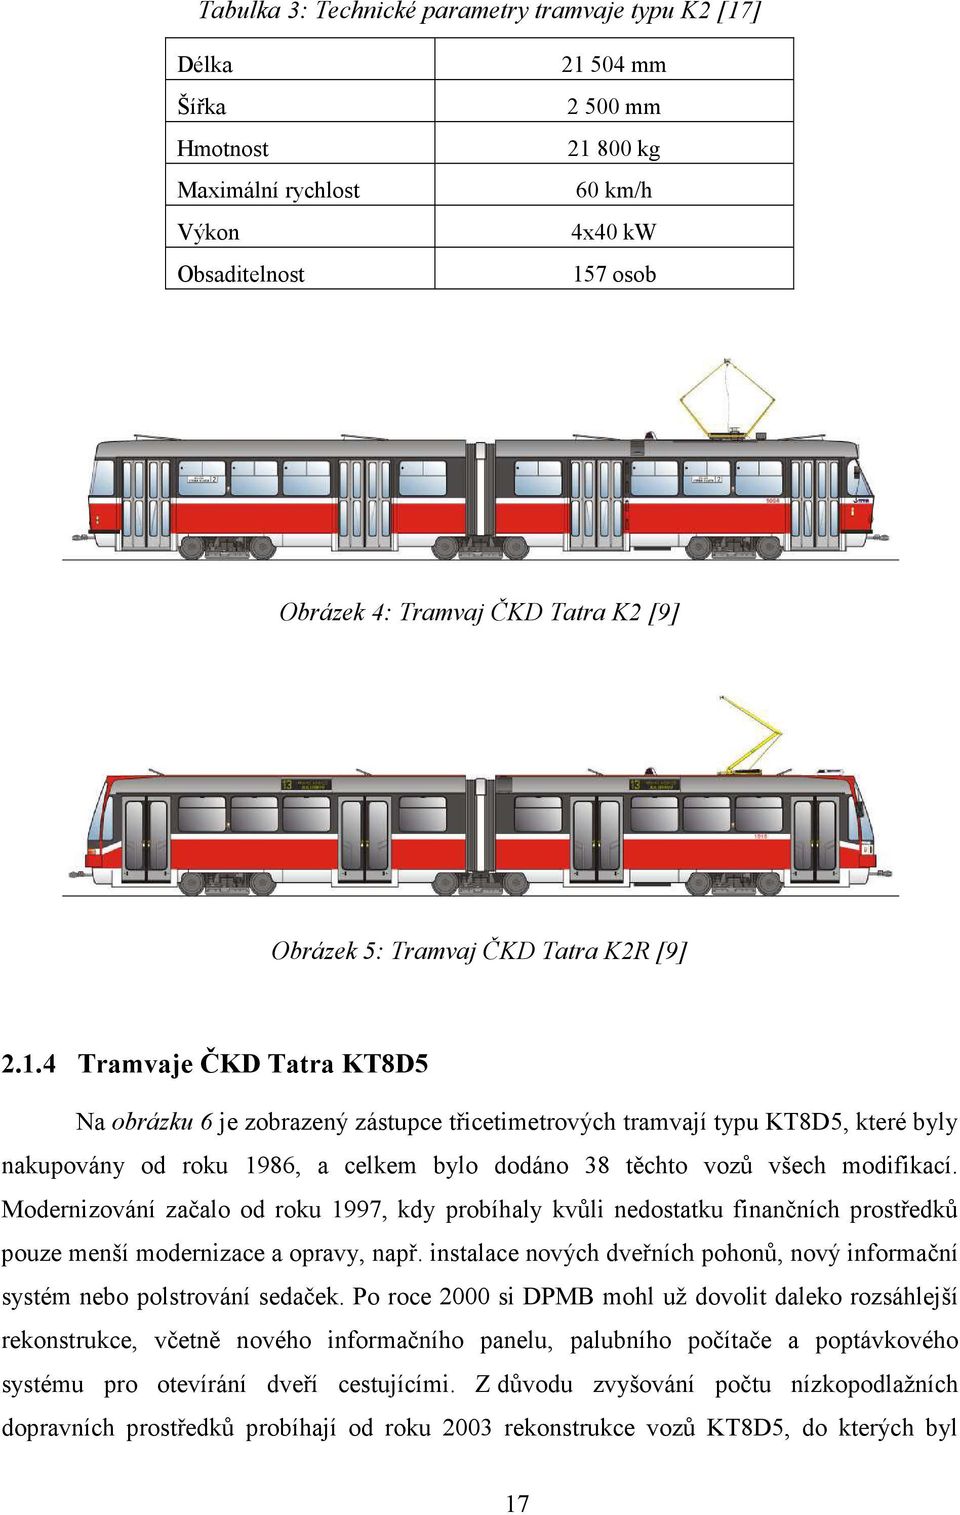 4 Tramvaje ČKD Tatra KT8D5 Na obrázku 6 je zobrazený zástupce třicetimetrových tramvají typu KT8D5, které byly nakupovány od roku 1986, a celkem bylo dodáno 38 těchto vozů všech modifikací.